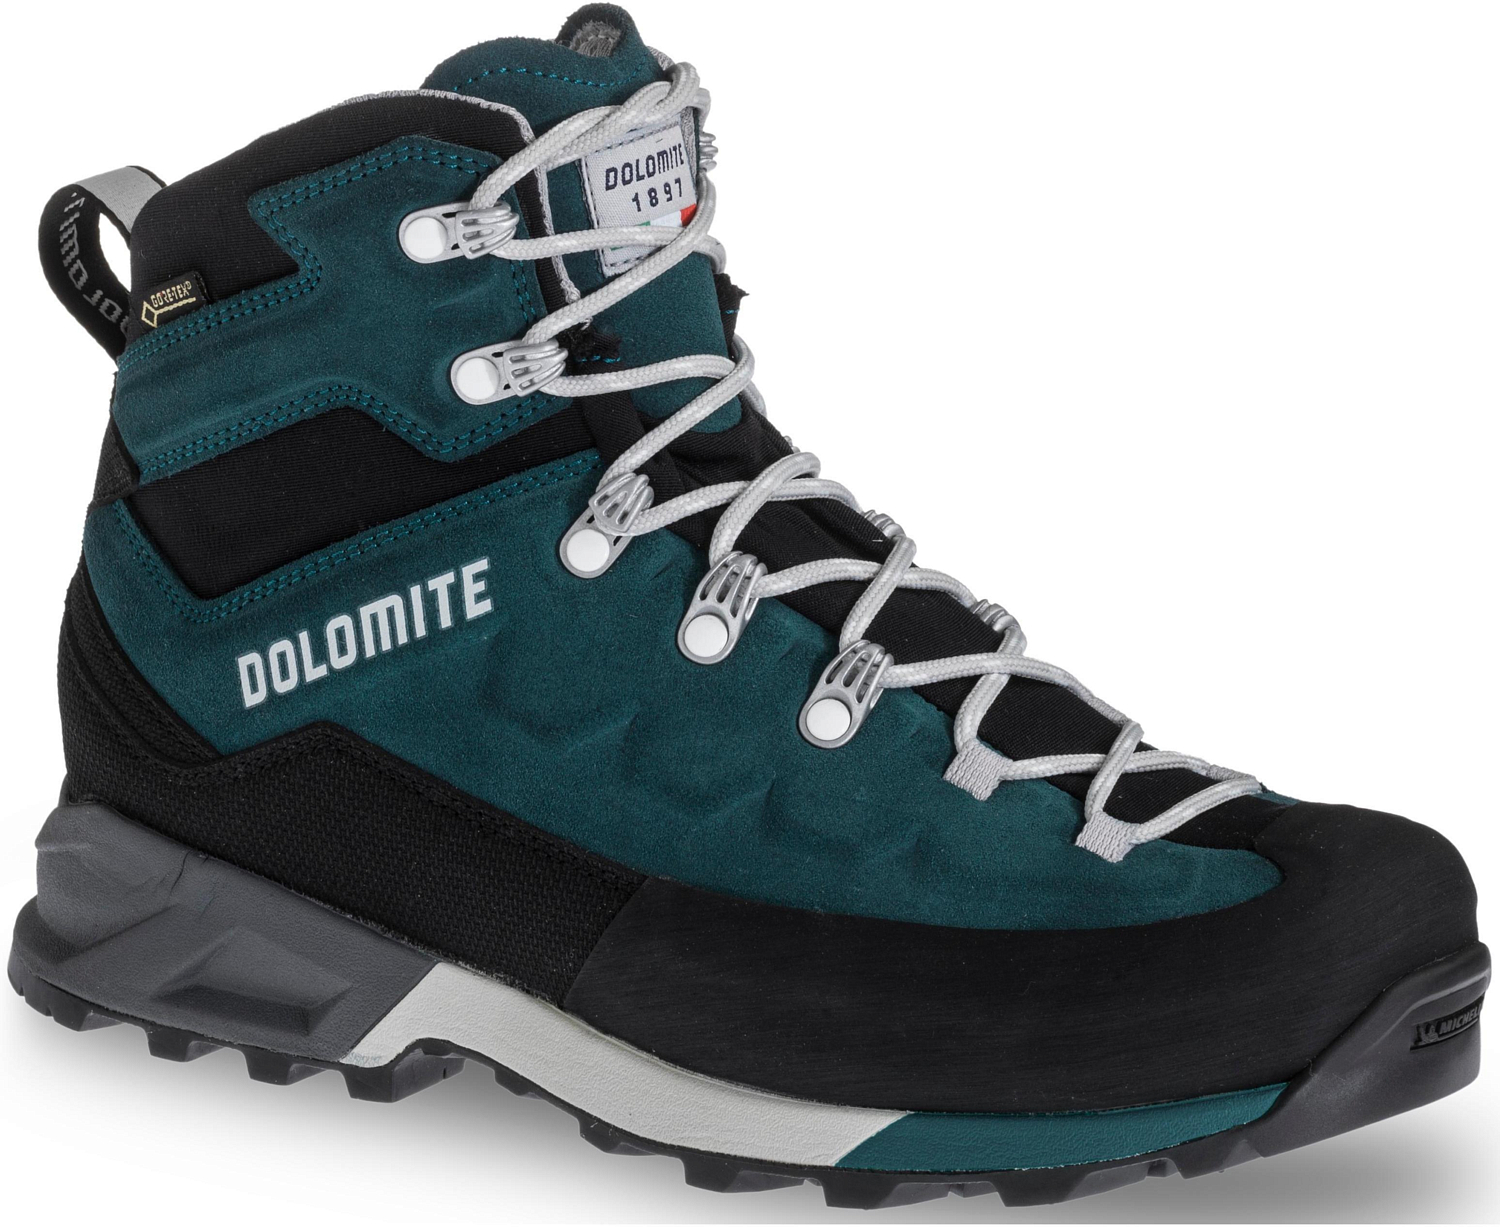 Ботинки Dolomite Steinbock GTX W's Teal Green